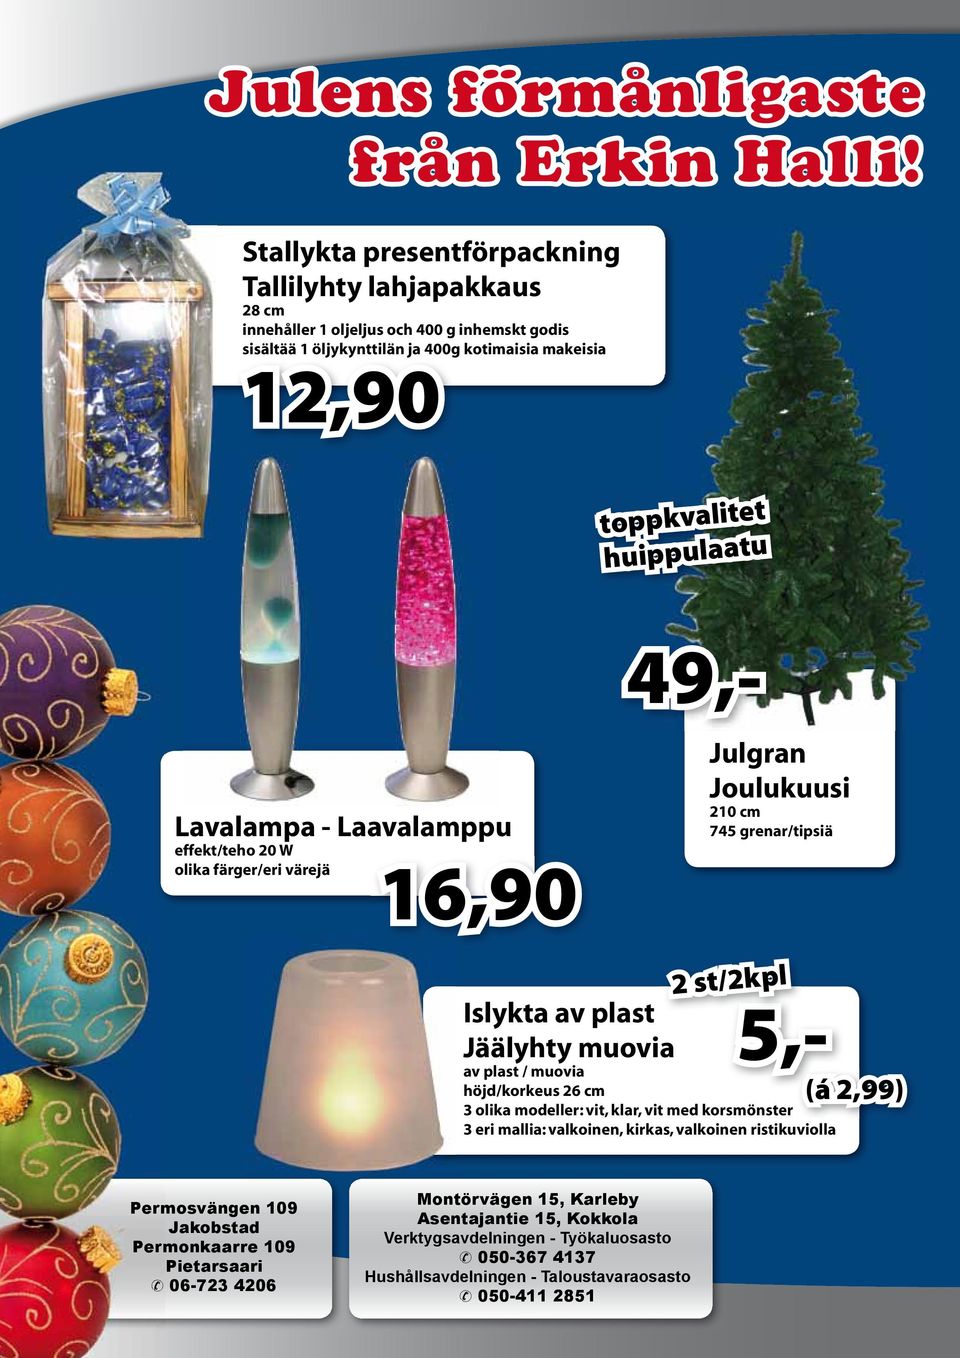 49,- Lavalampa - Laavalamppu effekt/teho 20 W olika färger/eri värejä 16,90 Julgran Joulukuusi 210 cm 745 grenar/tipsiä 2 st/2kpl Islykta av plast Jäälyhty muovia av plast / muovia